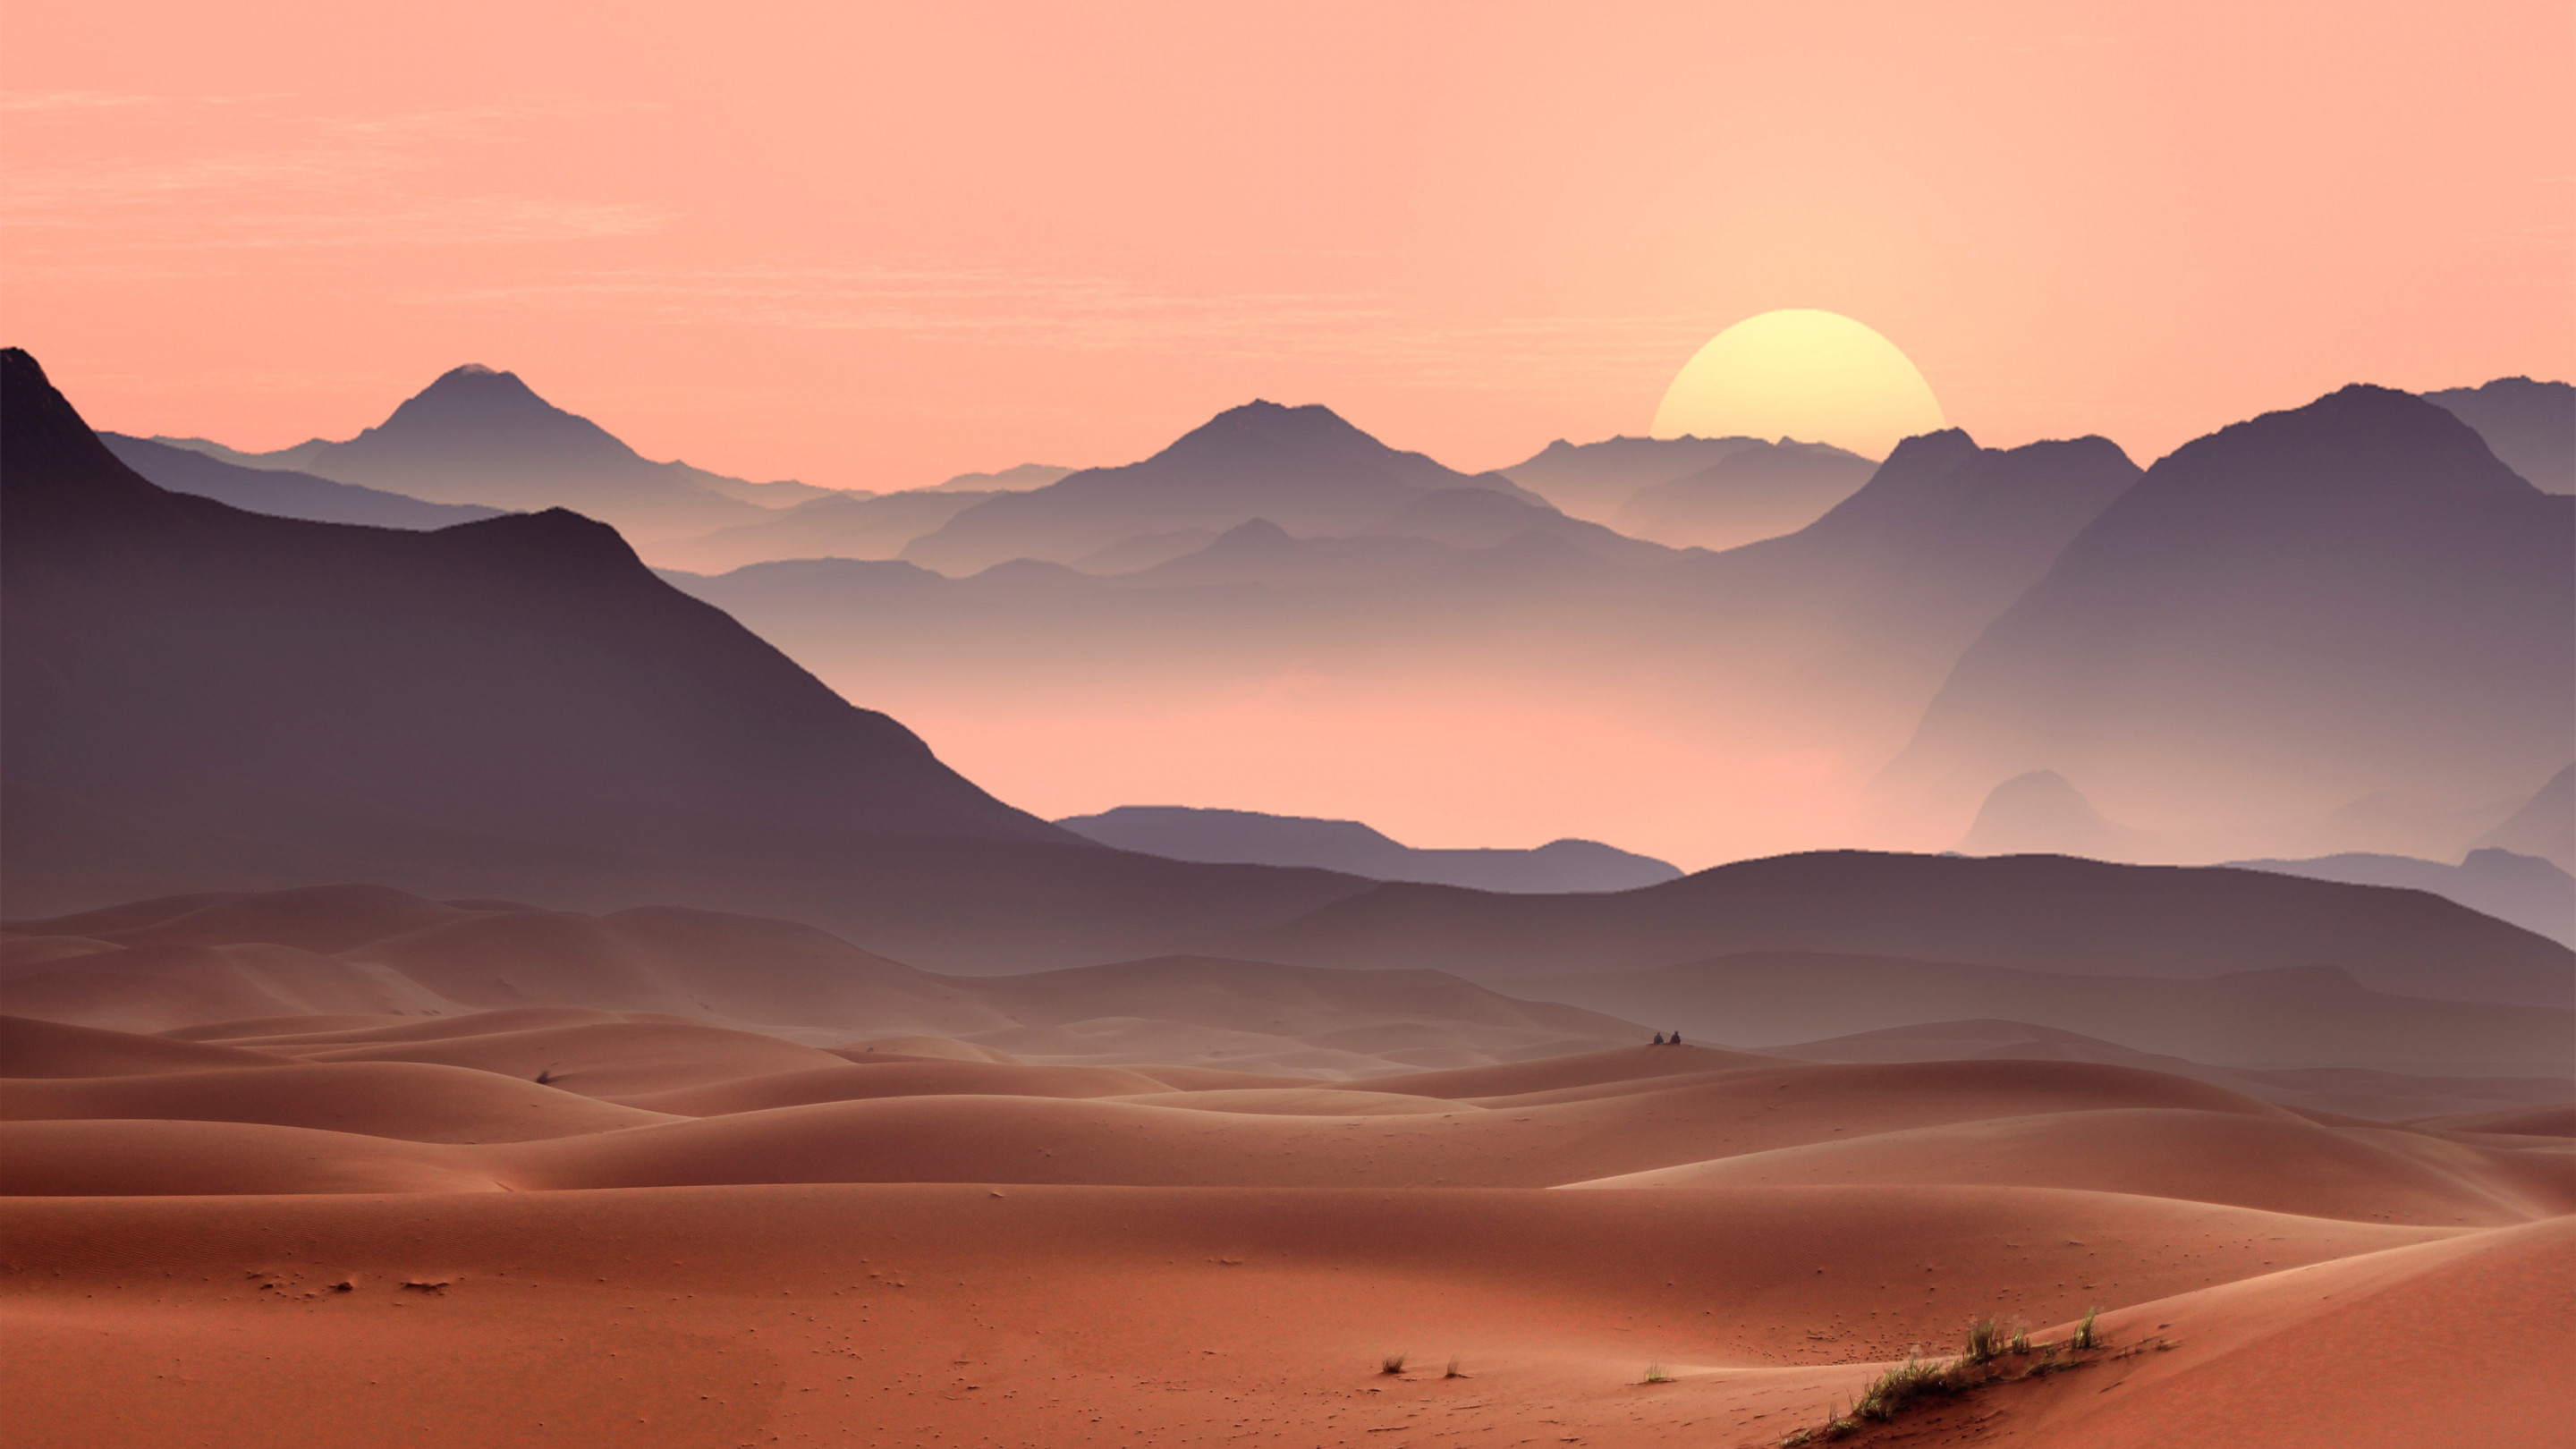 Sunset on the desert dunes wallpaper 2880x1620